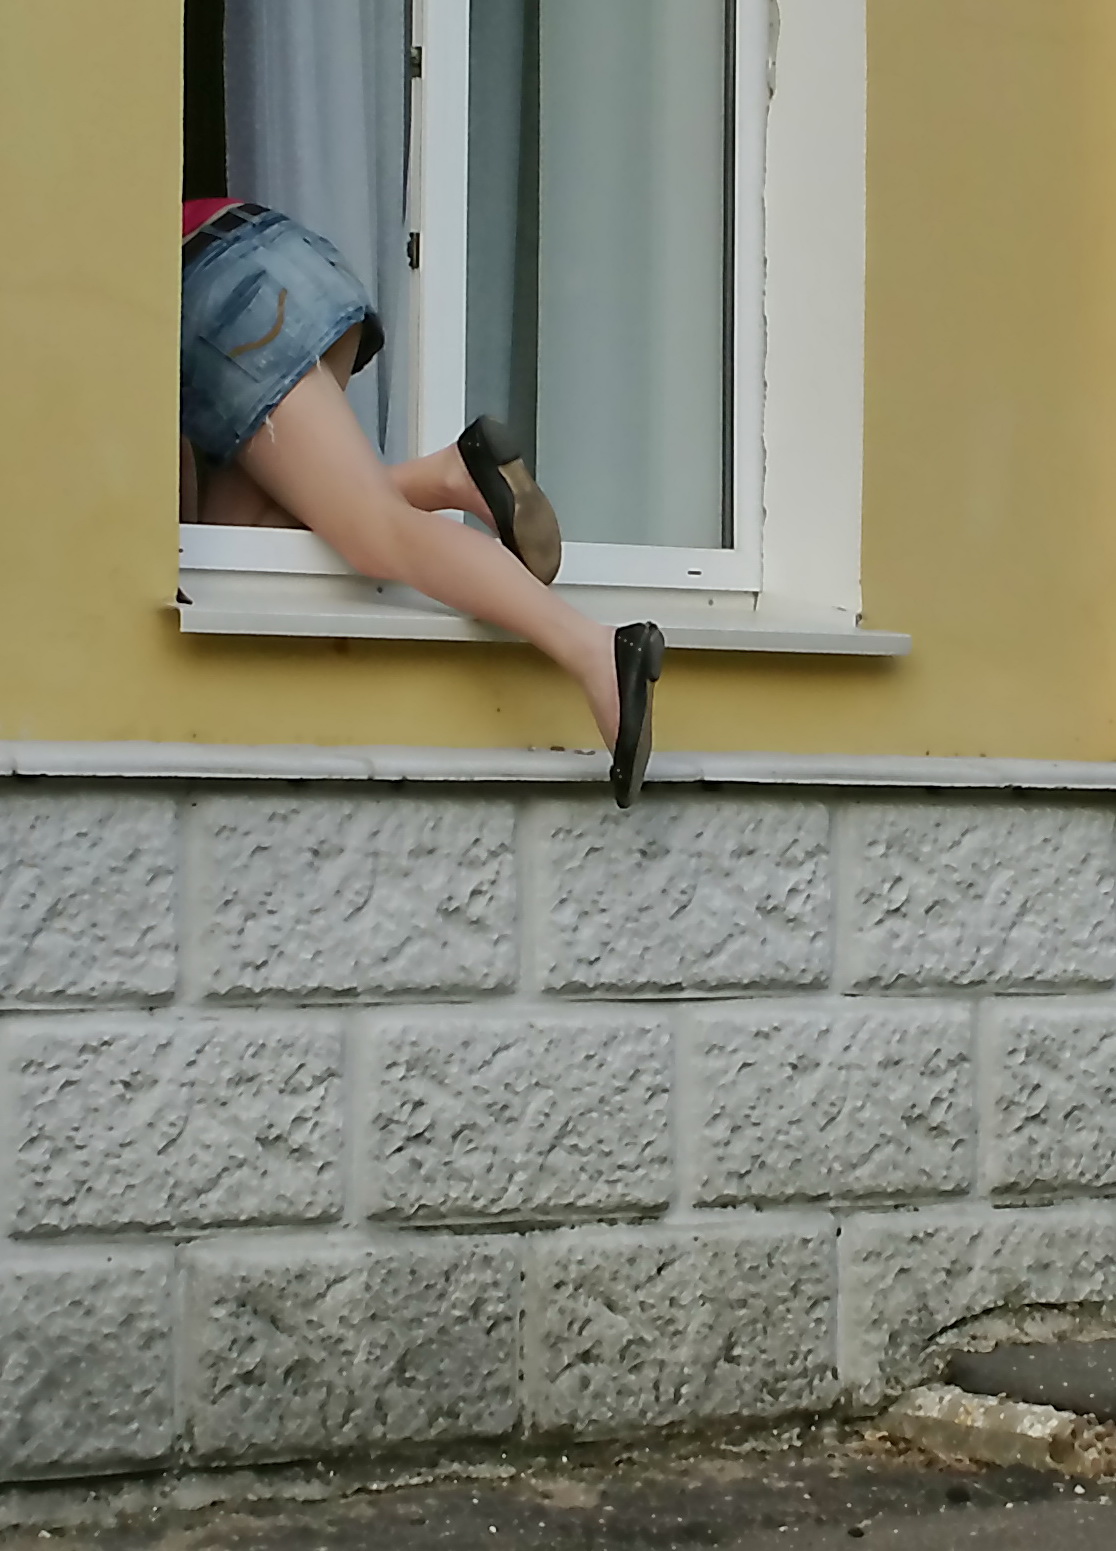 Подглядывание 50. Женщина лезет в окно. Девушка заглядывает в окно. Девушка залезает в окно. Подглядывание через окно.